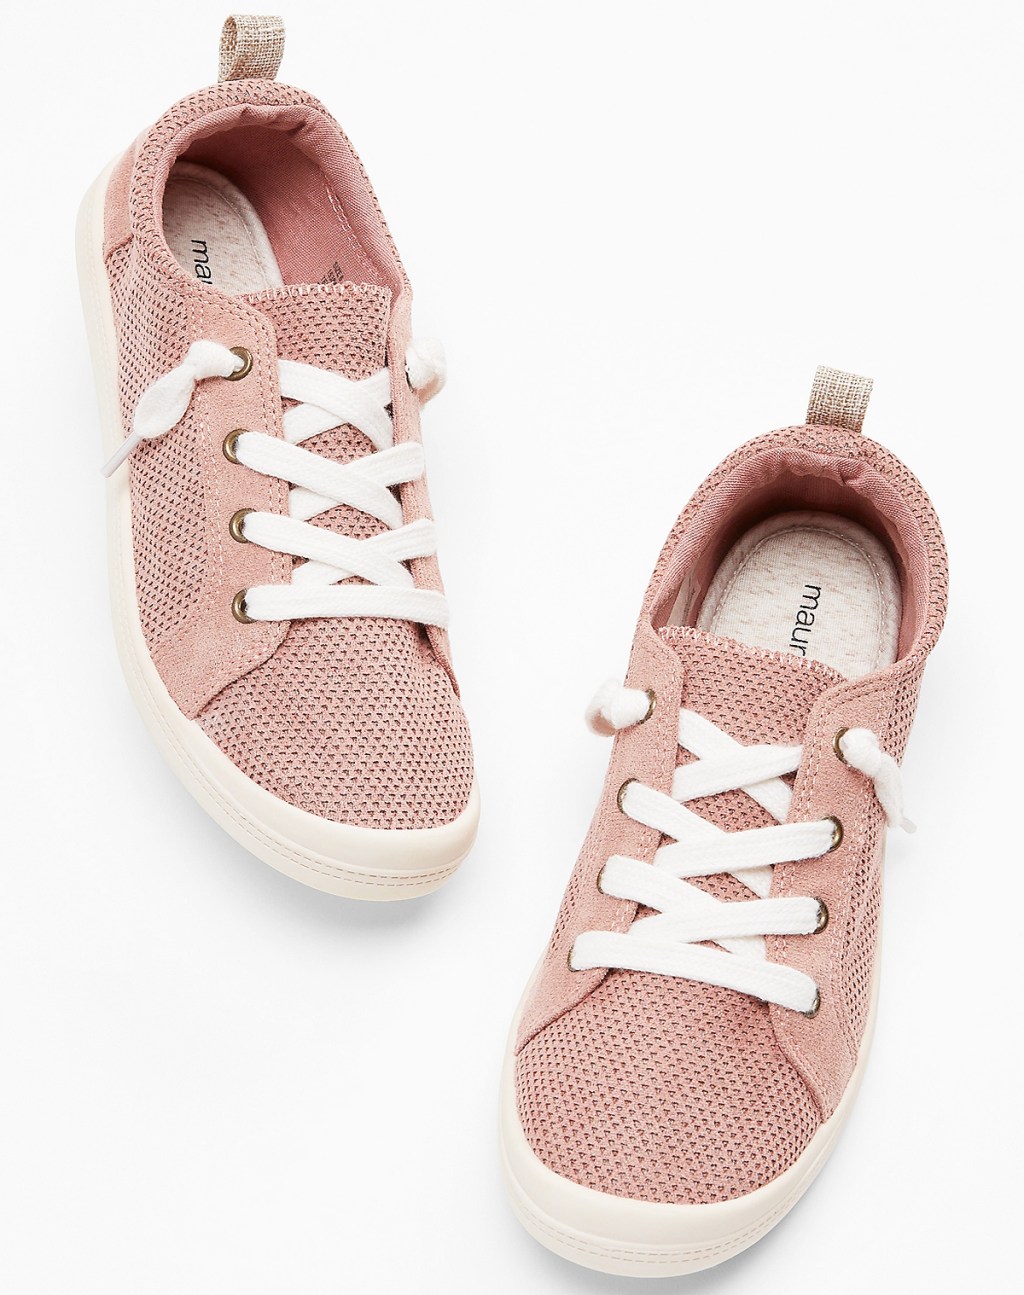 pair of pink slip on sneakers